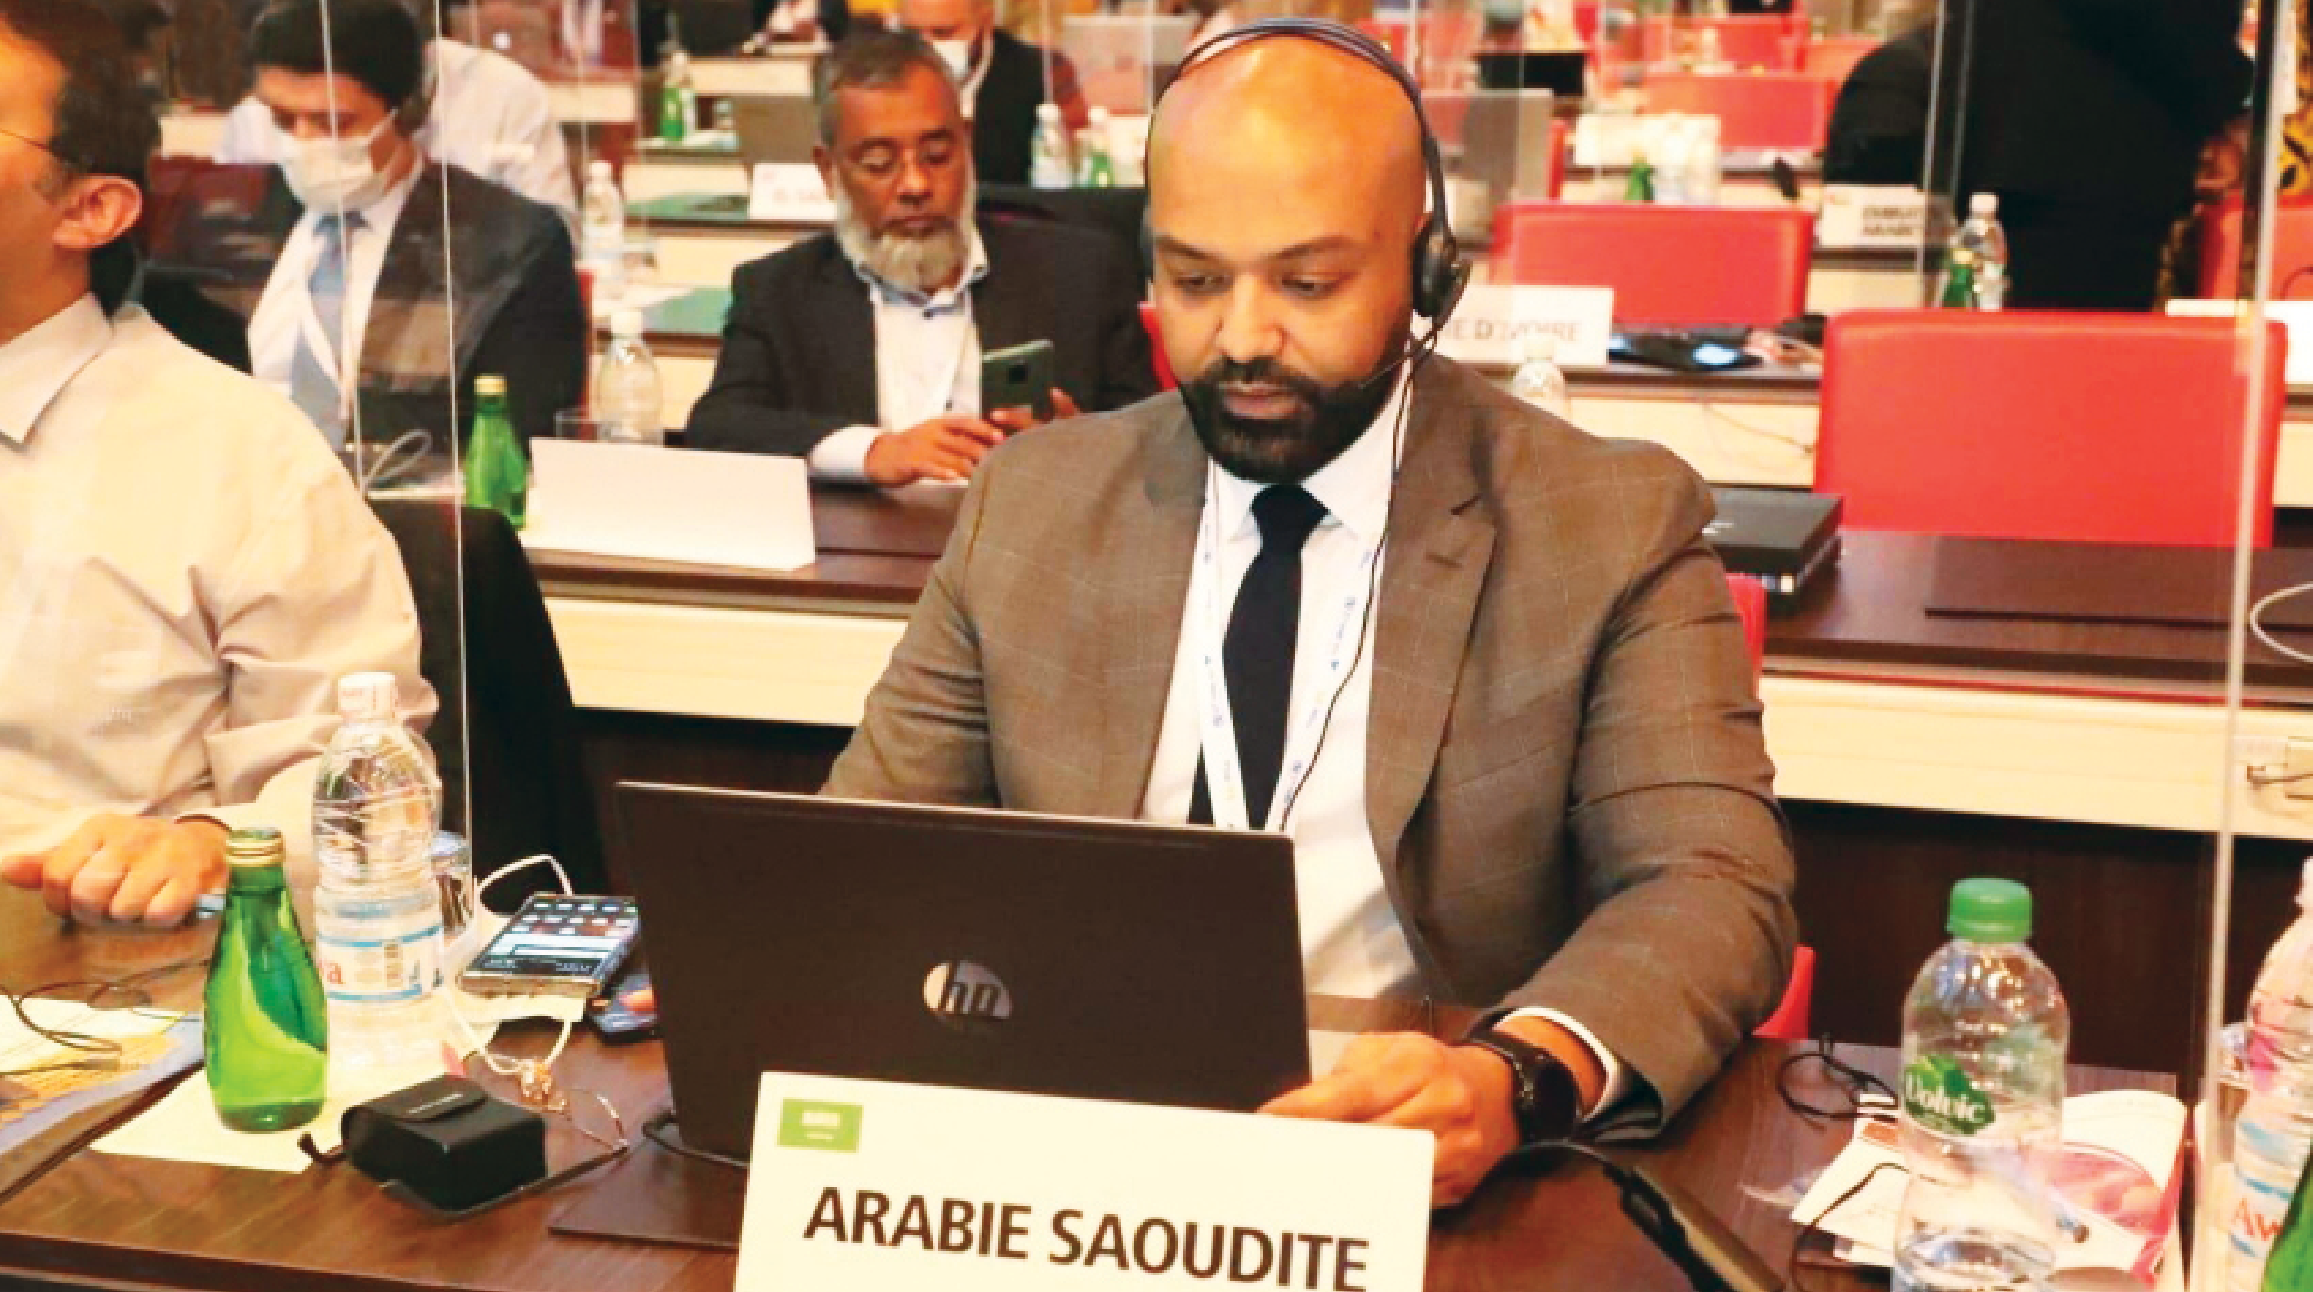 Saudi Arabia wins membership of UPU boards of directors and investment